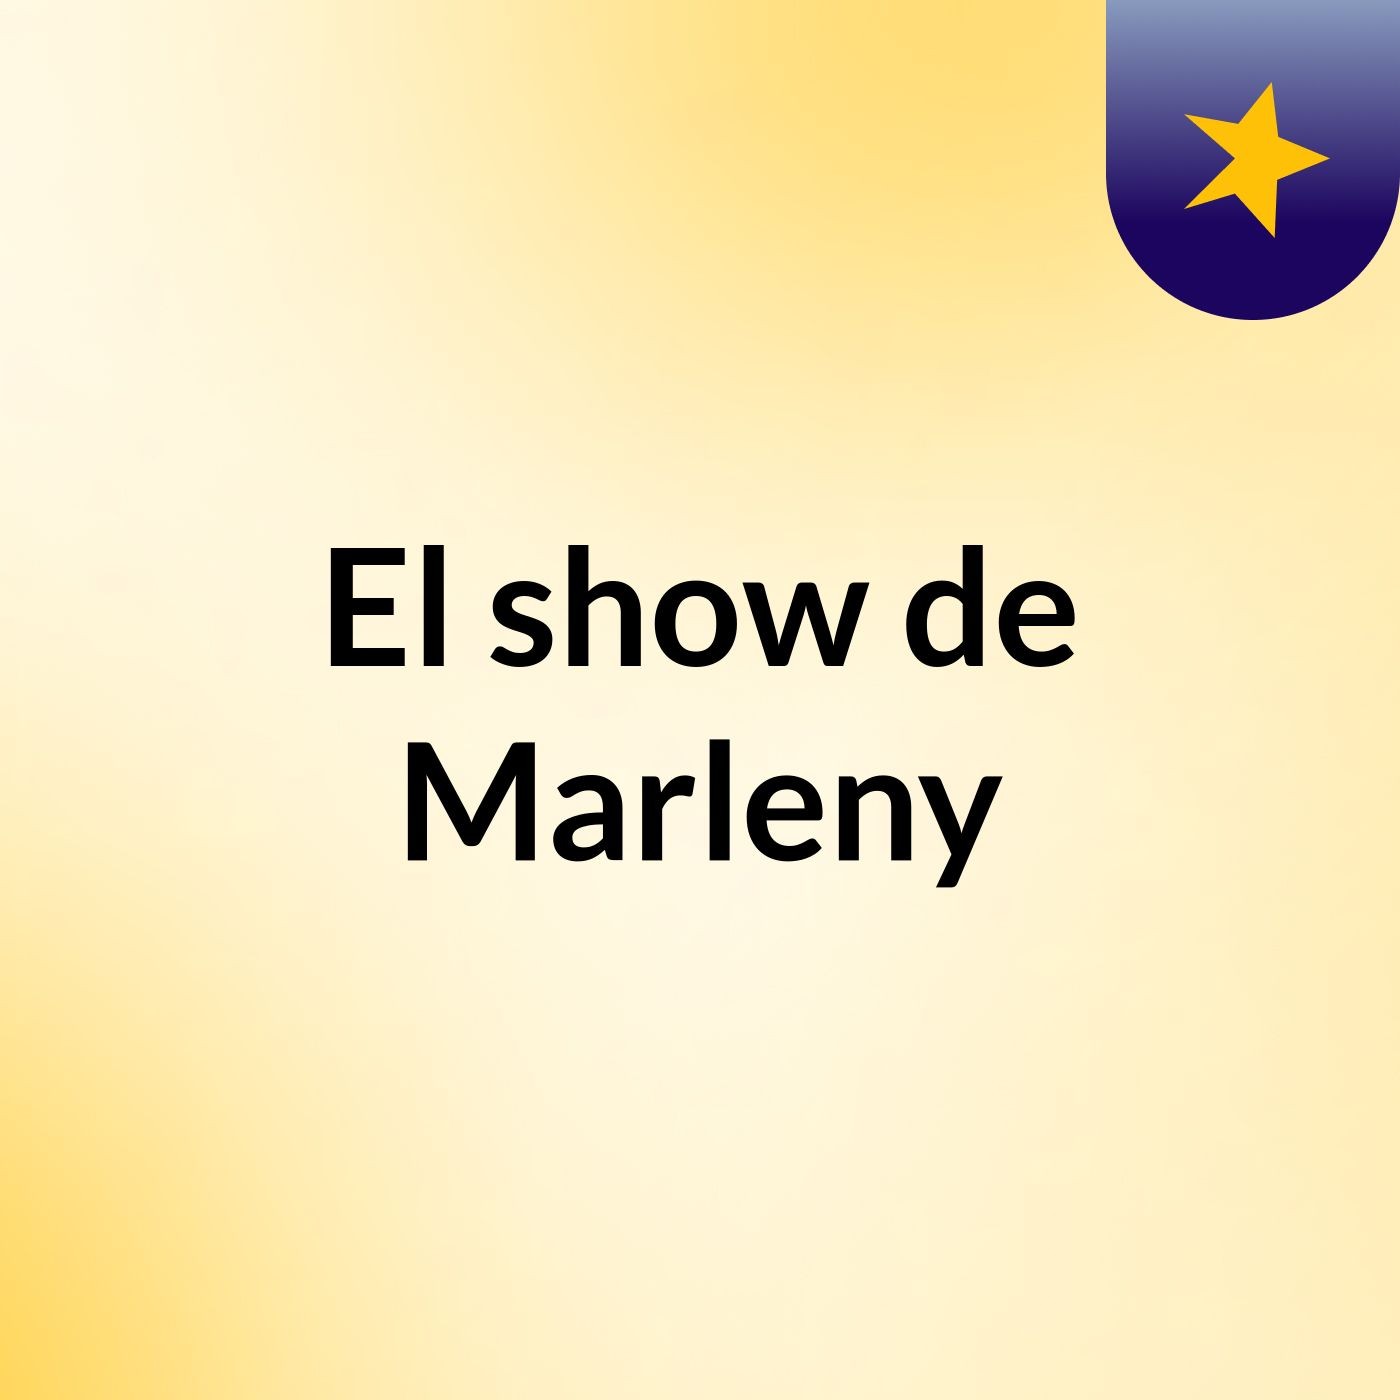 El show de Marleny